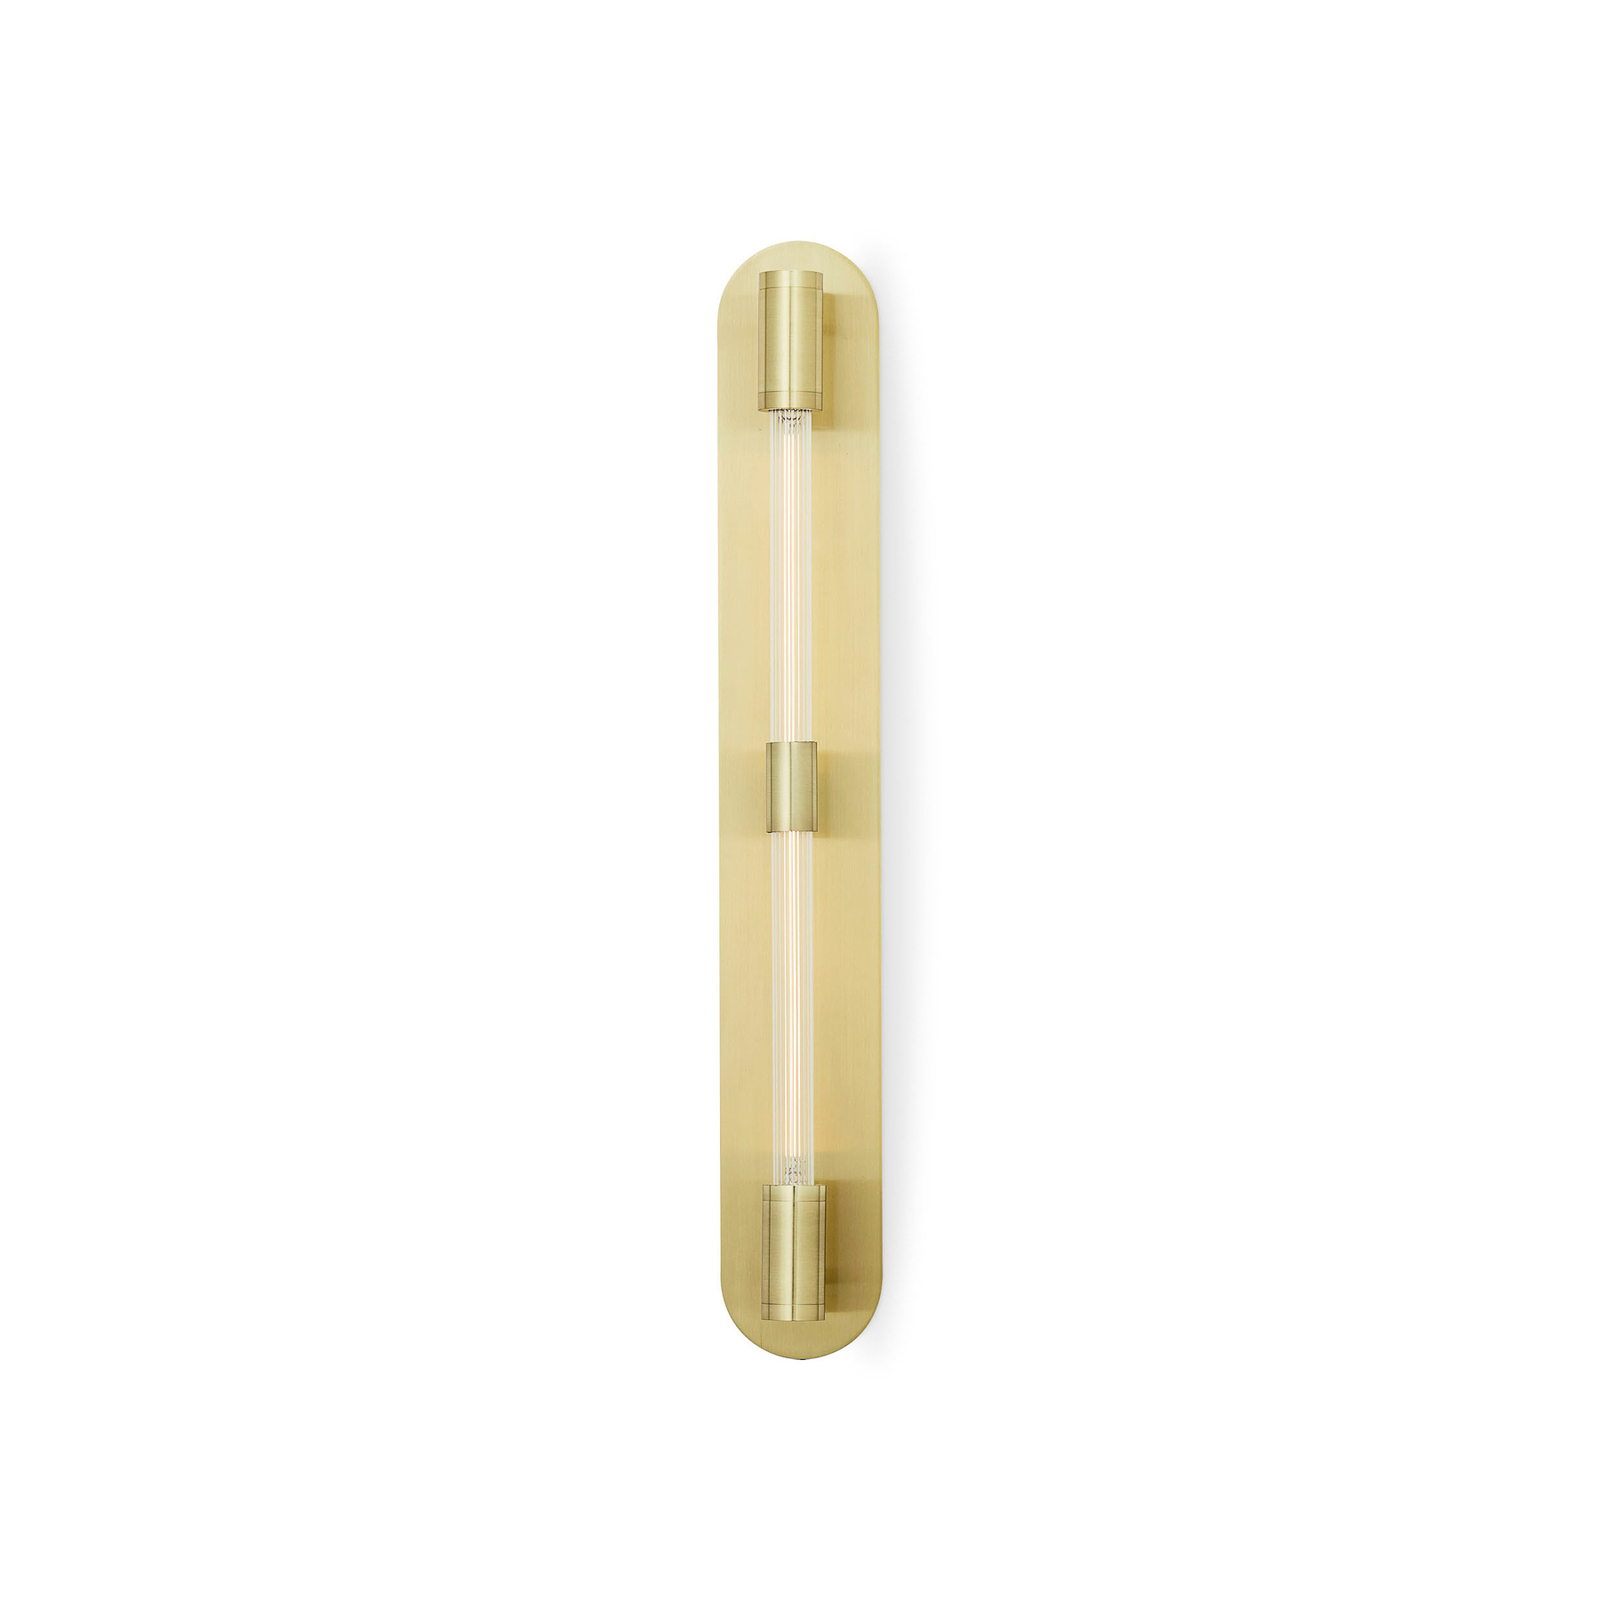 Nástenné svietidlo Liberty Double, zlatá farba, 2 svetlá, výška 83 cm